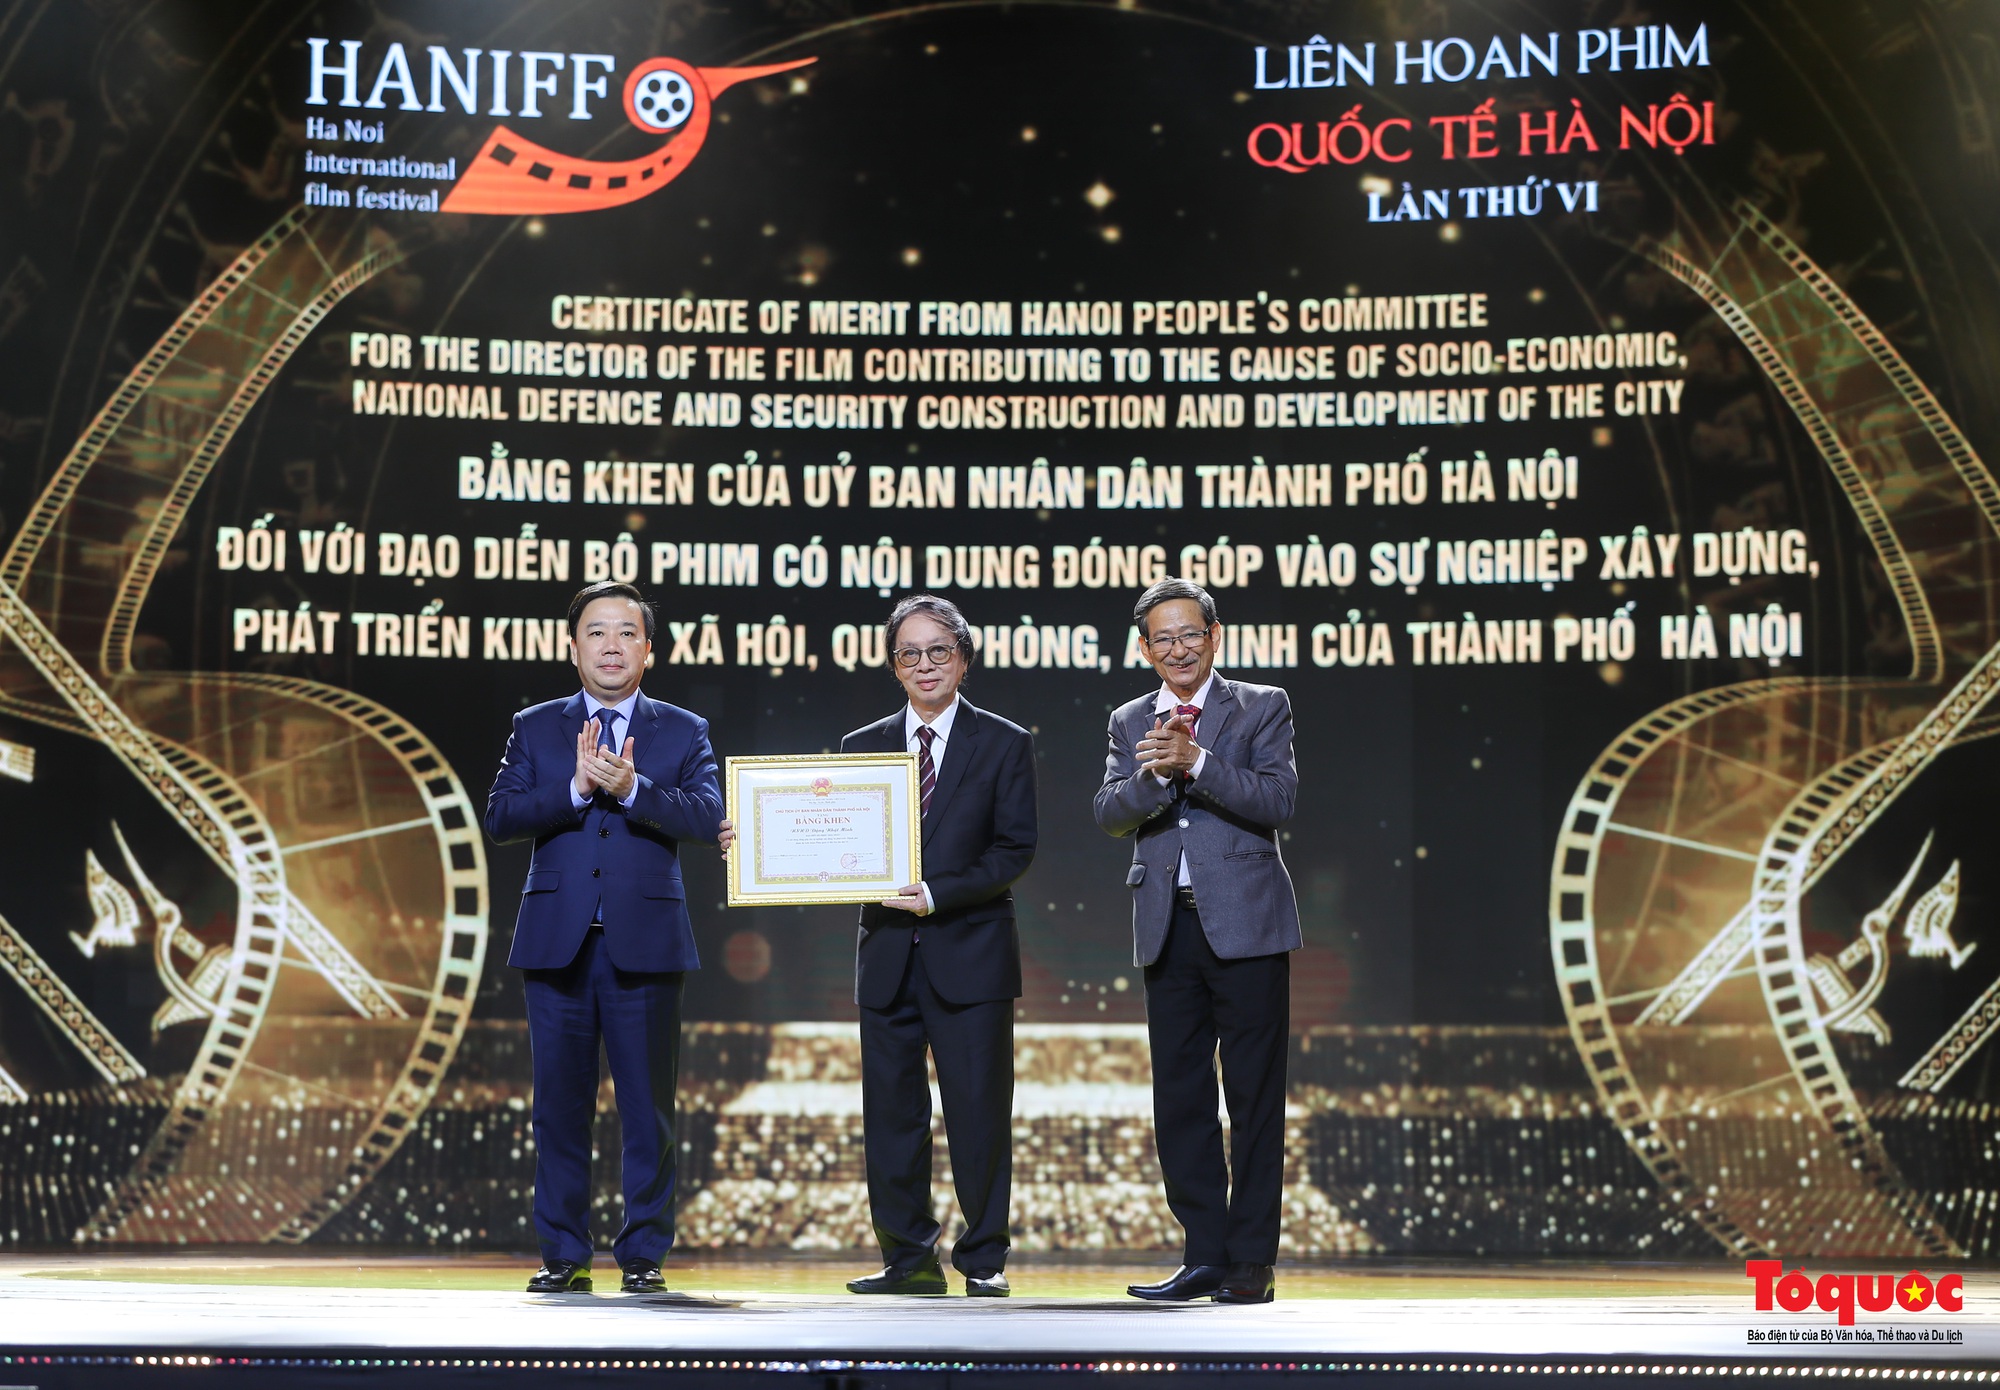 Bế mạc HANIFF 2022: 12 hàng mục giải thưởng trao cho các bộ phim, diễn viên, đạo diễn xuất sắc - Ảnh 6.